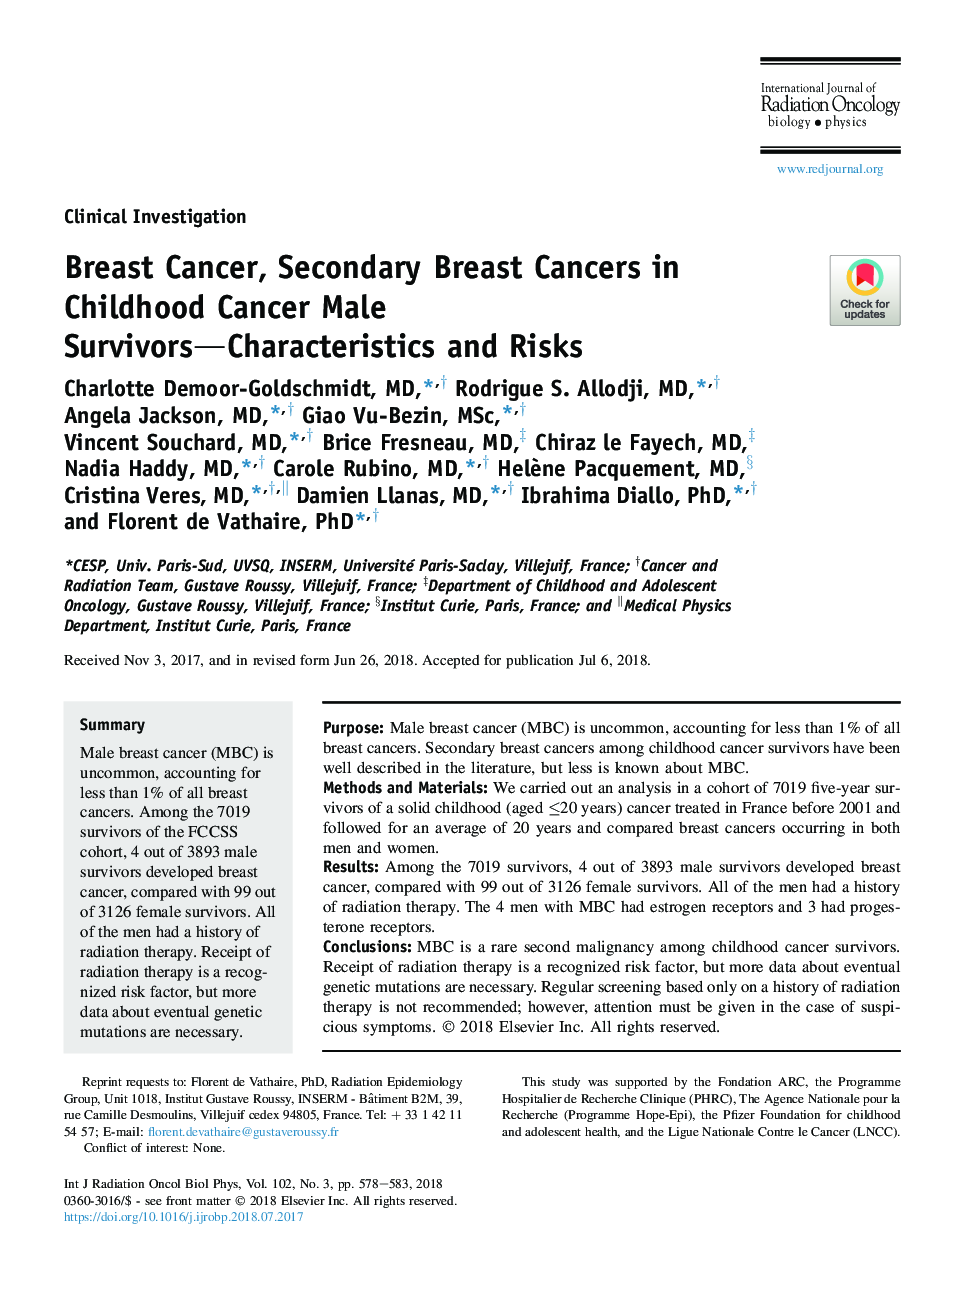 سرطان پستان، سرطان های شیری ثانویه در سرطان های دوران کودکی، مردان سرنوشت ساز، ویژگی ها و خطرات